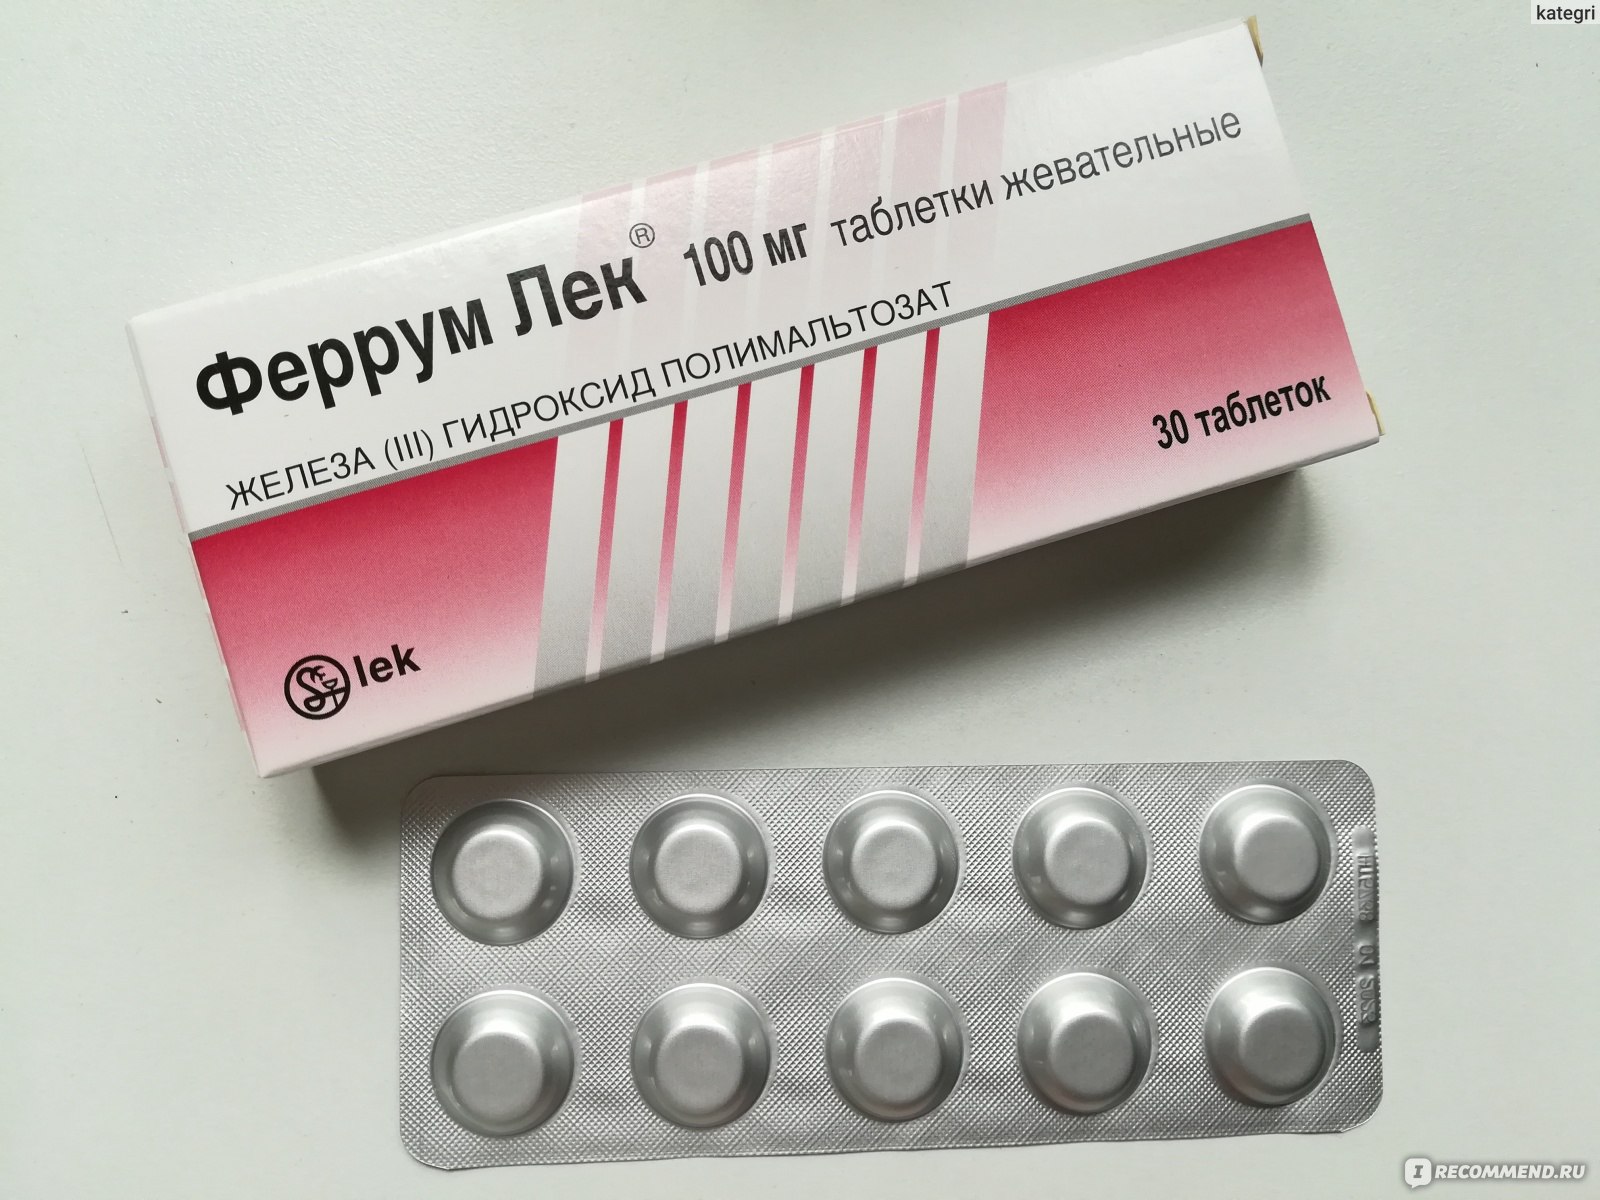 Препарат железа в таблетках лучший при анемии